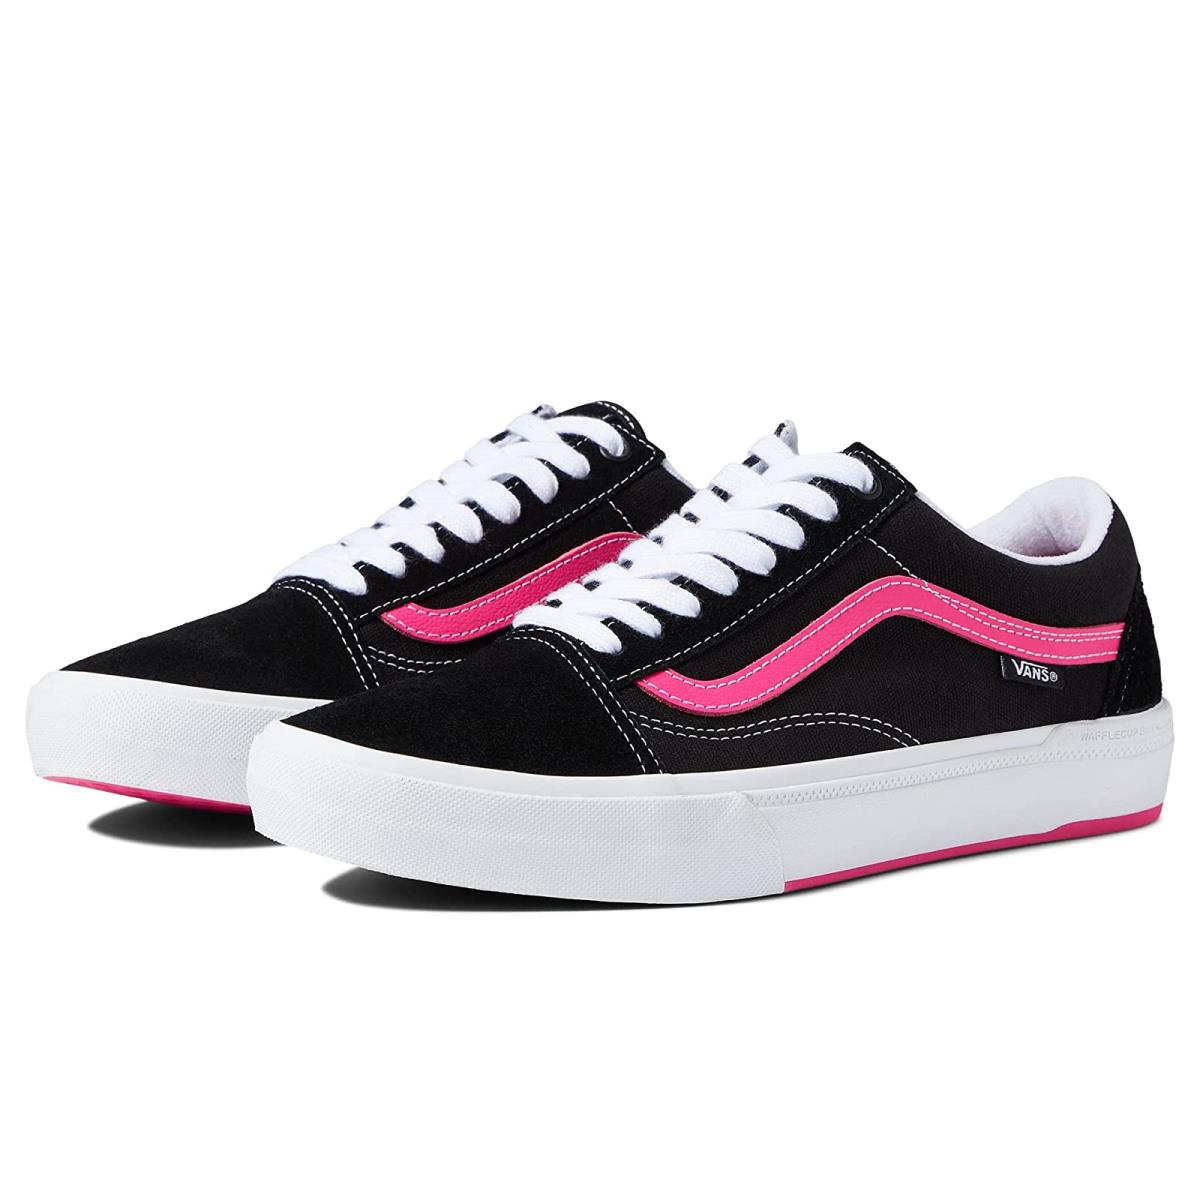 Man`s Sneakers Athletic Shoes Vans Bmx Old Skool Black/Neon Pink